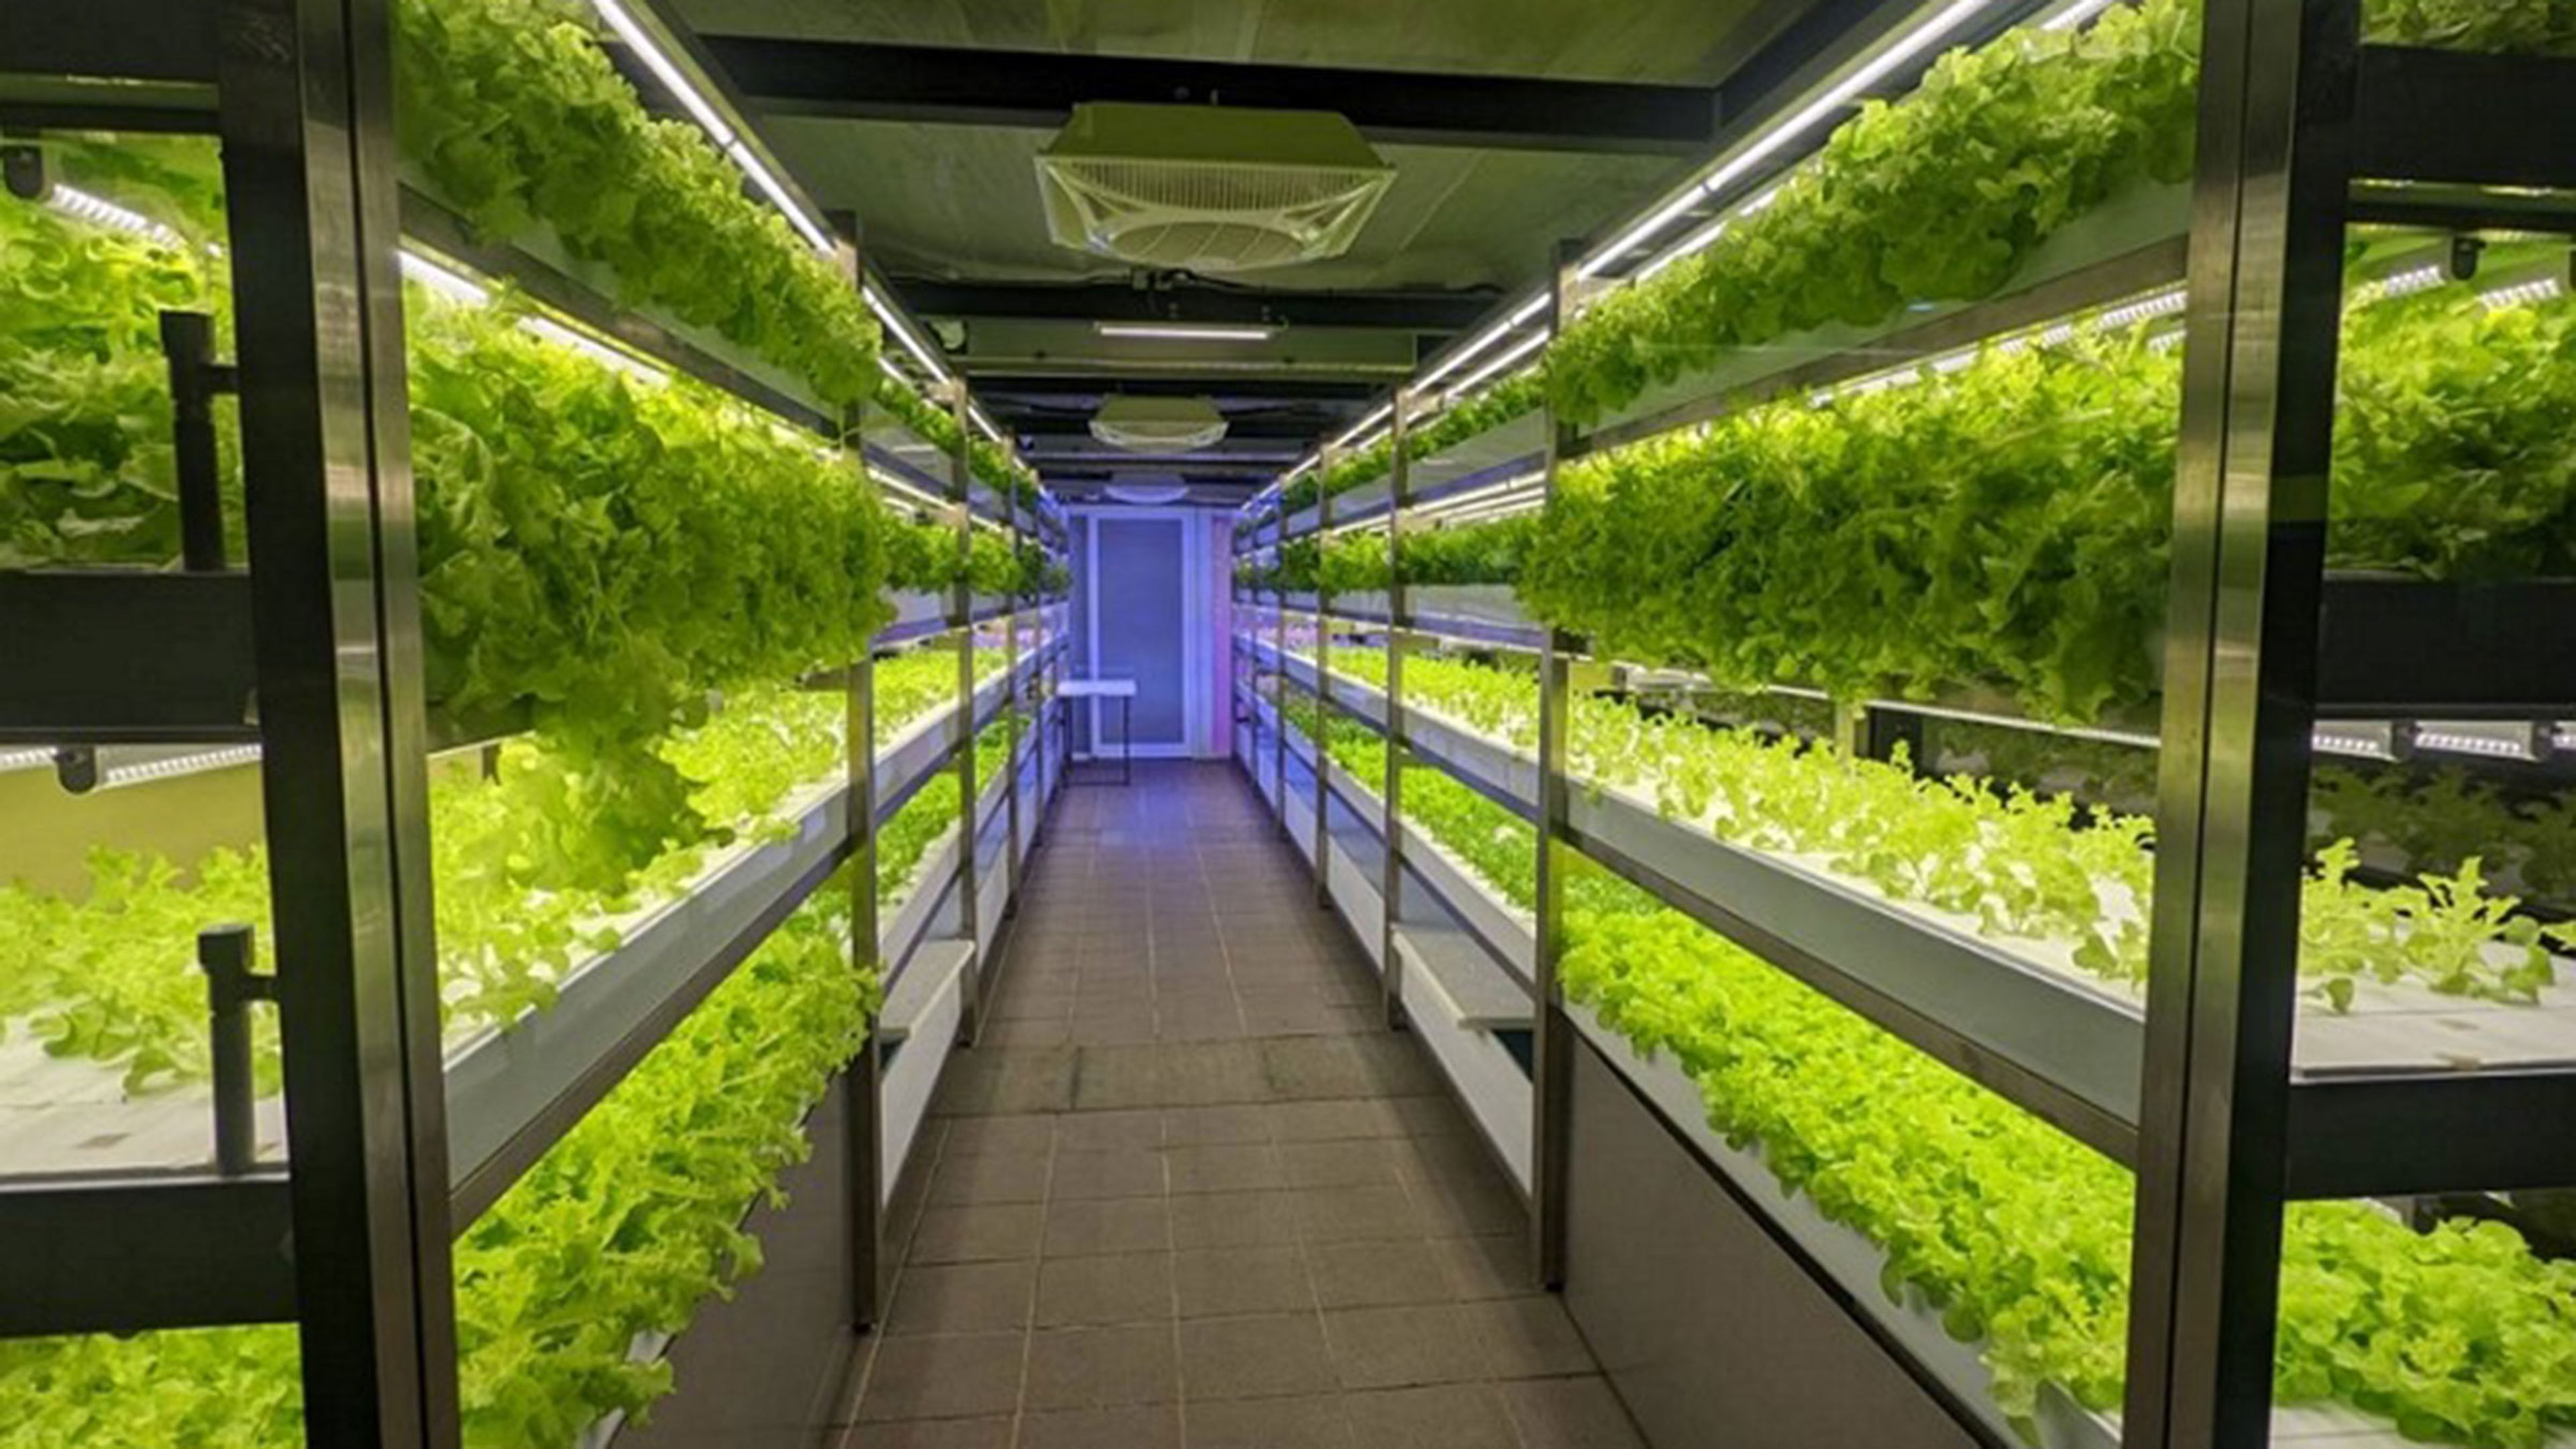 Transforman una estación de metro en una granja vertical orgánica